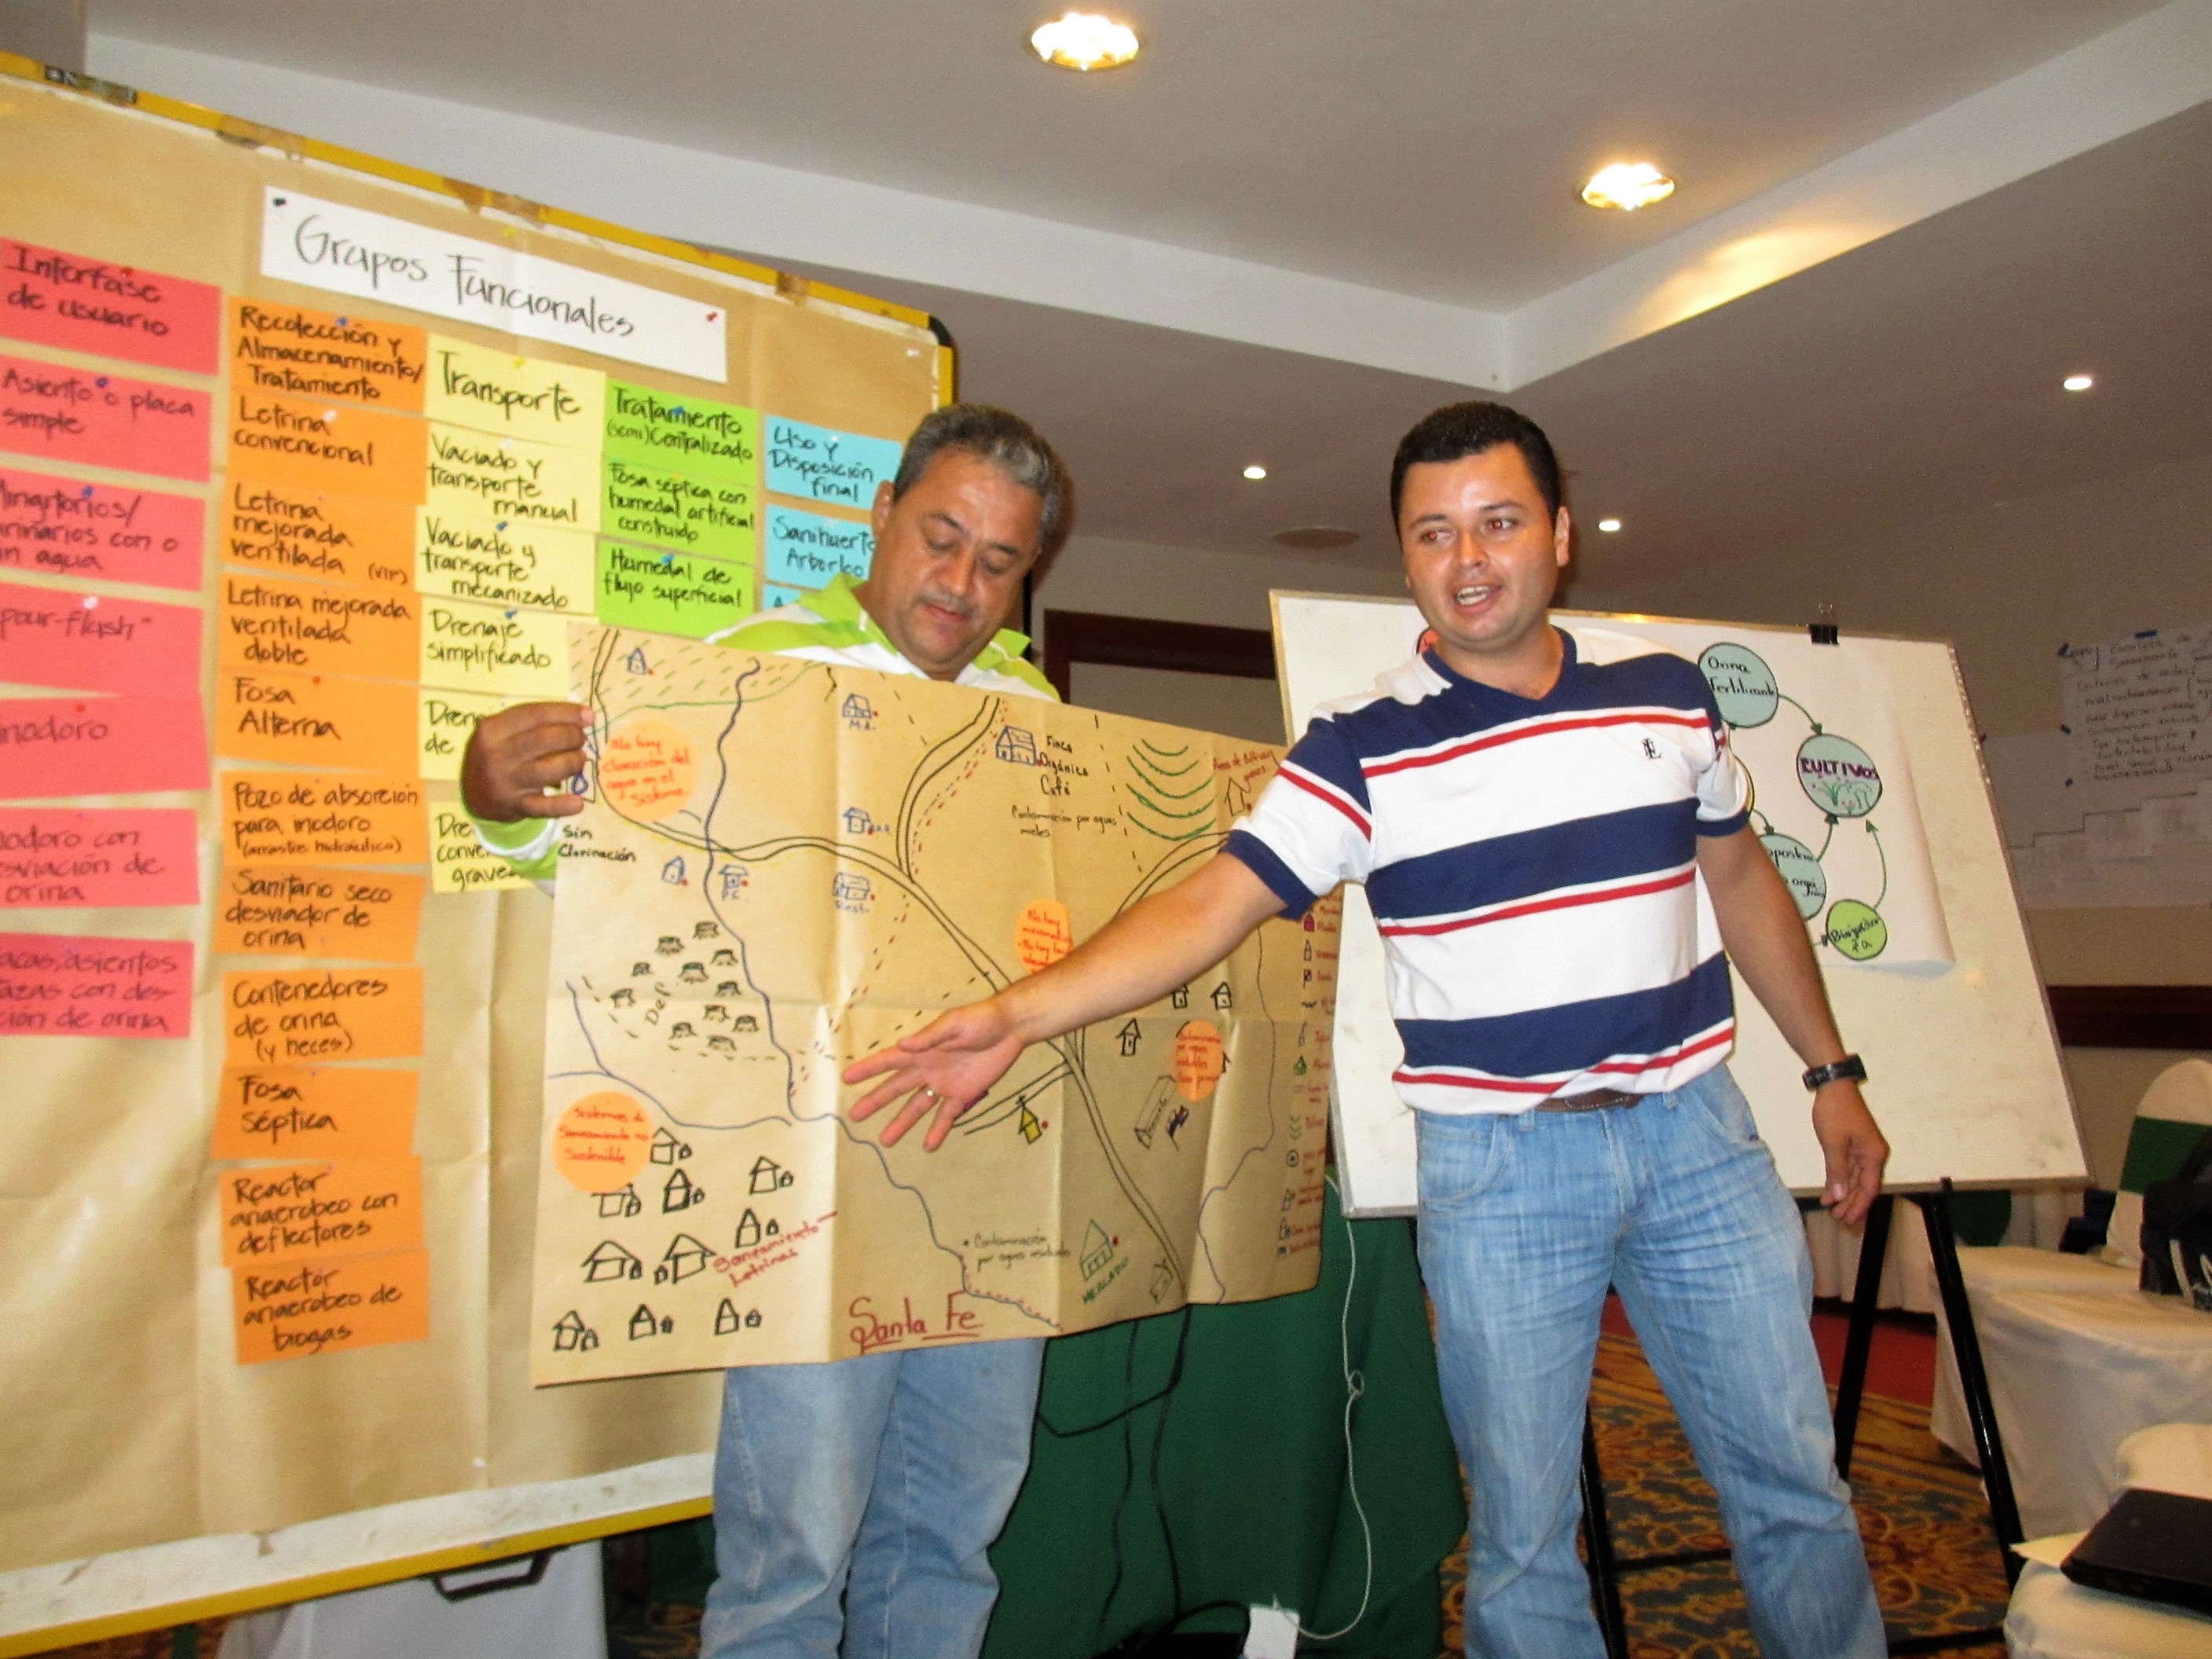 Workshop in Managua, Nicaragua with CapNet